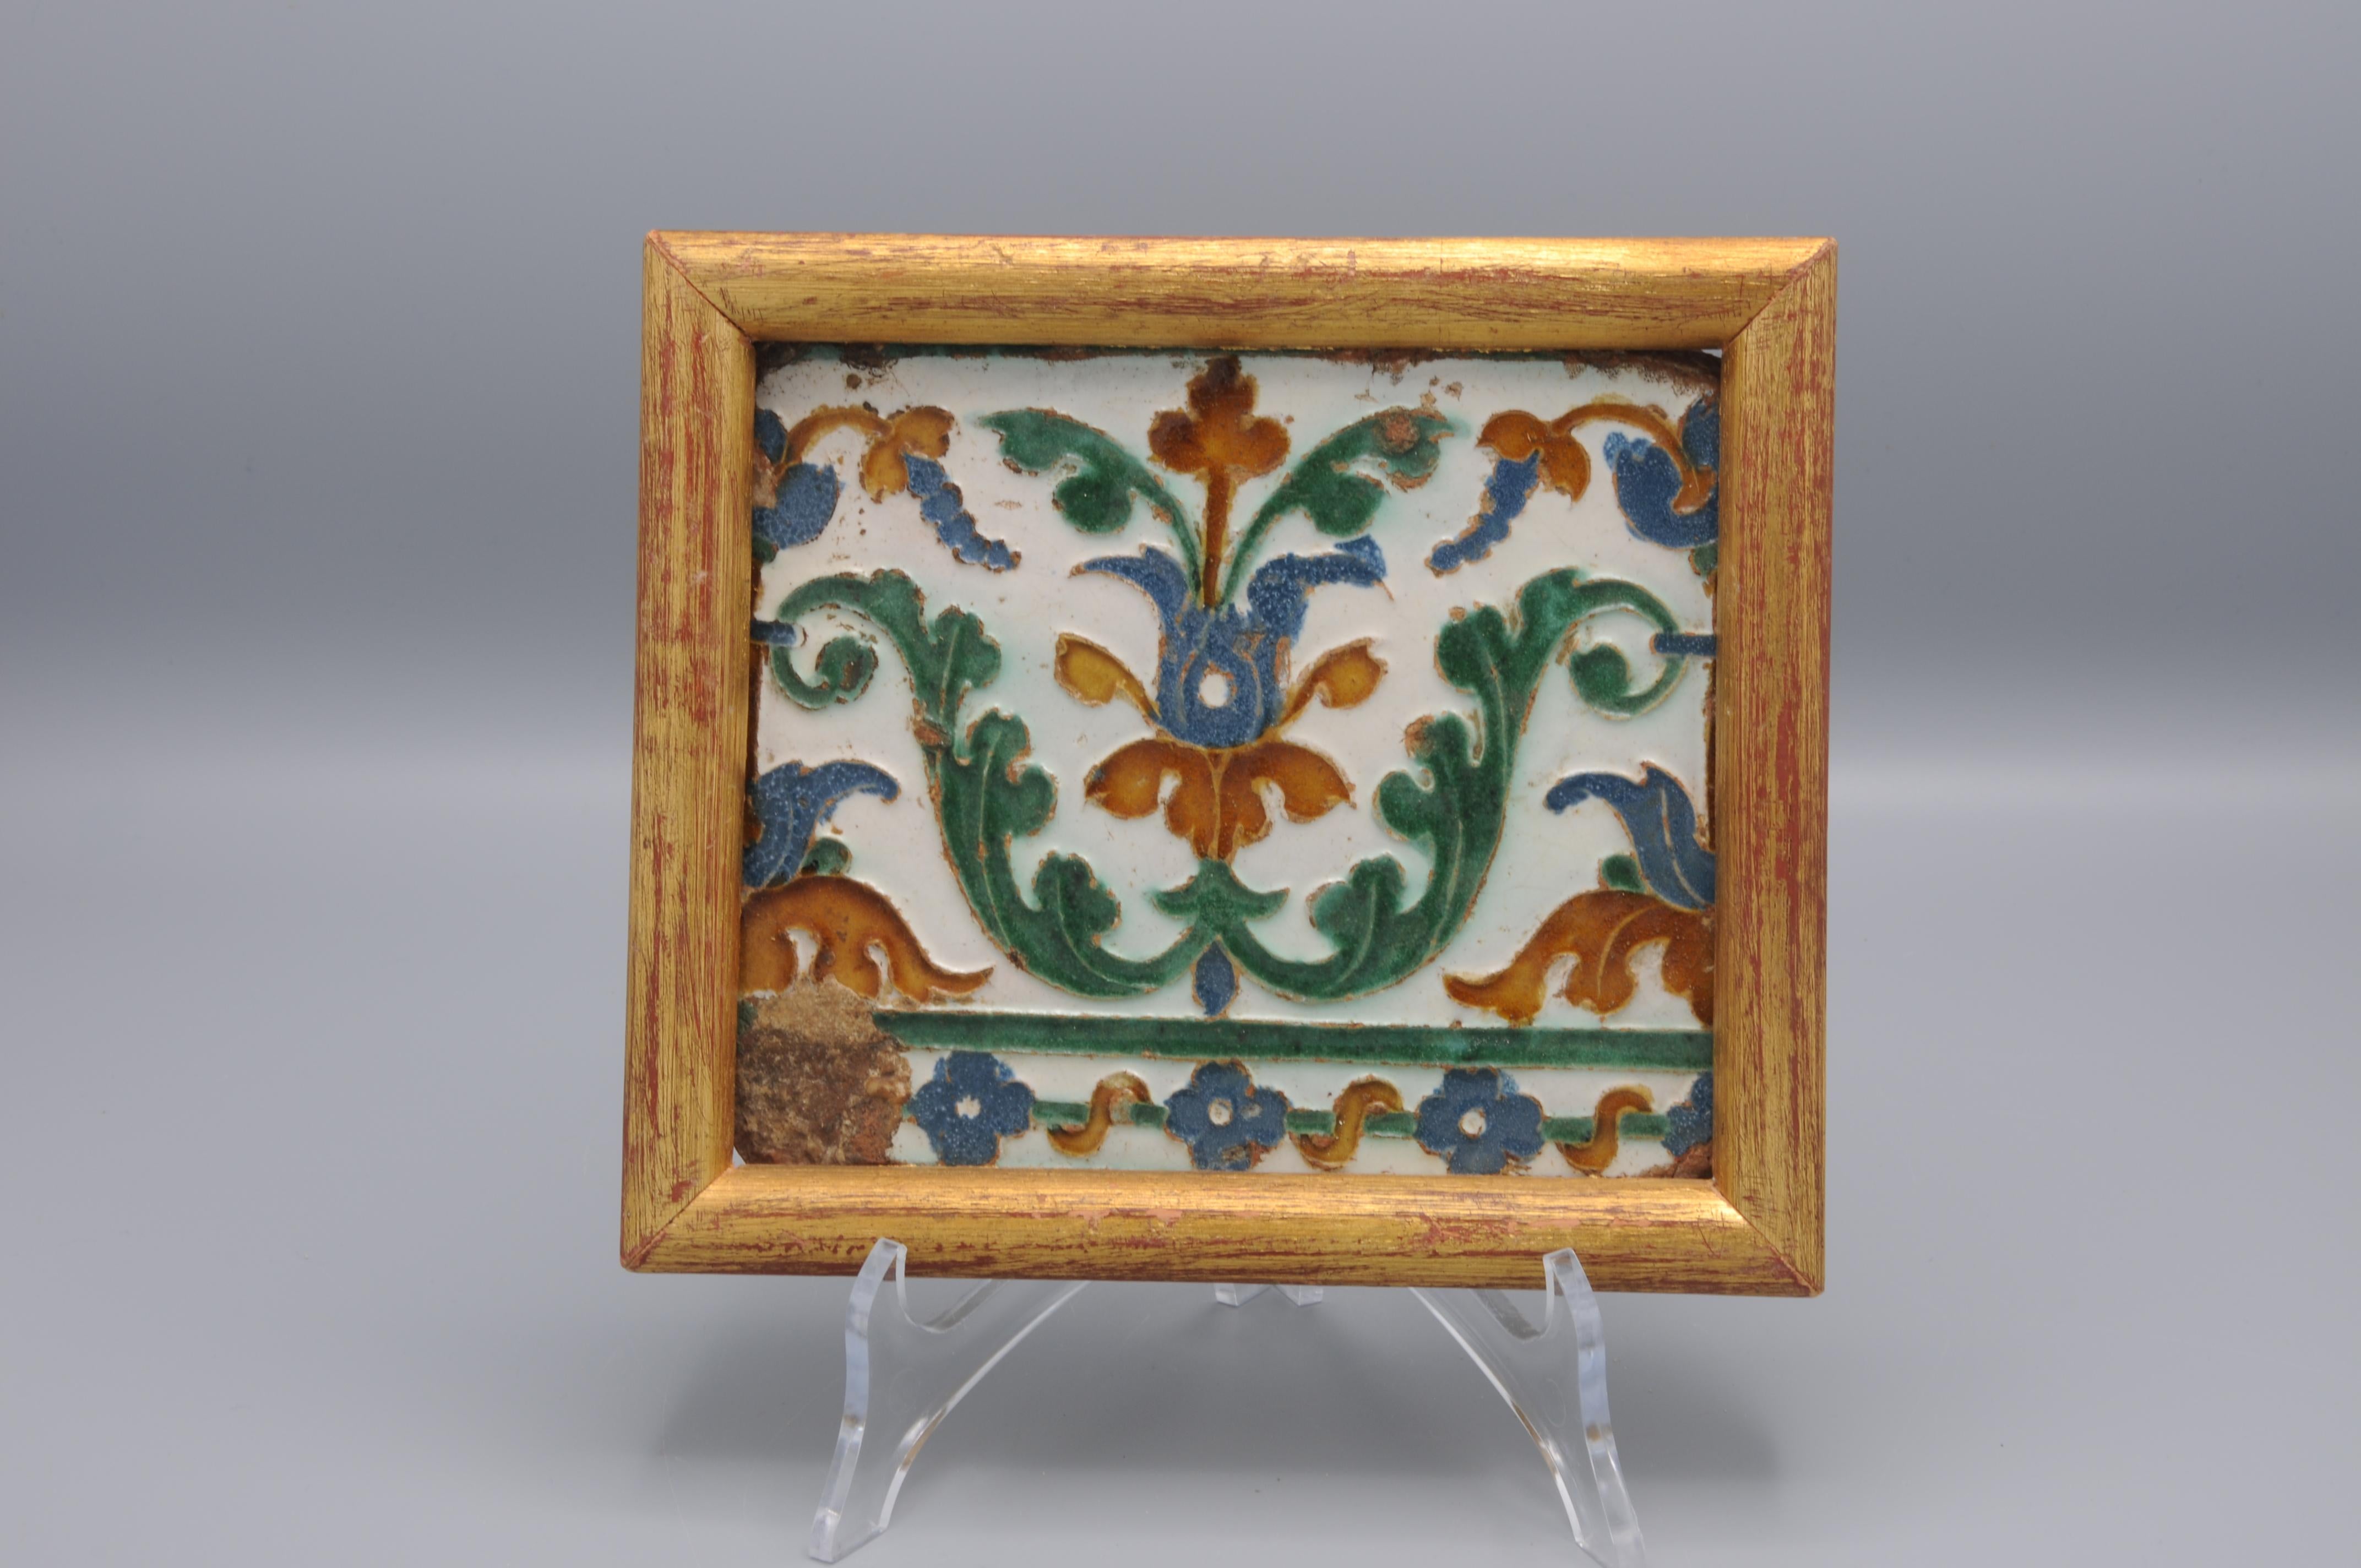 Tuile Arista y cuenca précoce fabriquée à Tolède. Ce carreau décoré à la Renaissance de fleurs stylisées a probablement été réalisé entre 1550 et 1575. 


